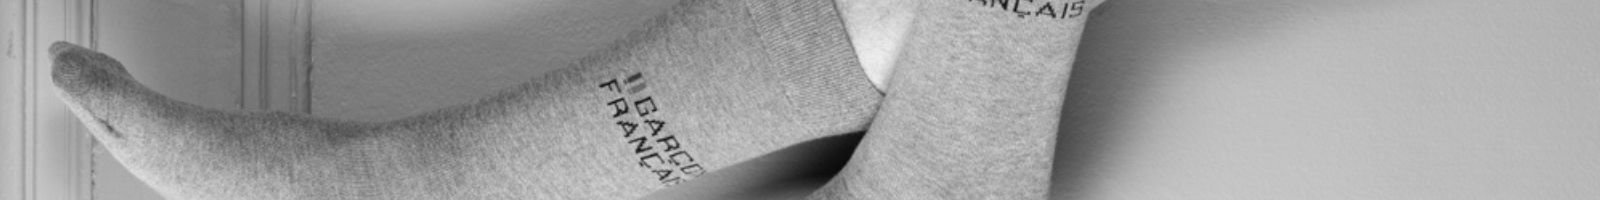 Lot de 2 paires de chaussettes all over micro motifs et unie fabrication  francaise - Chaussettes Homme | Kindy